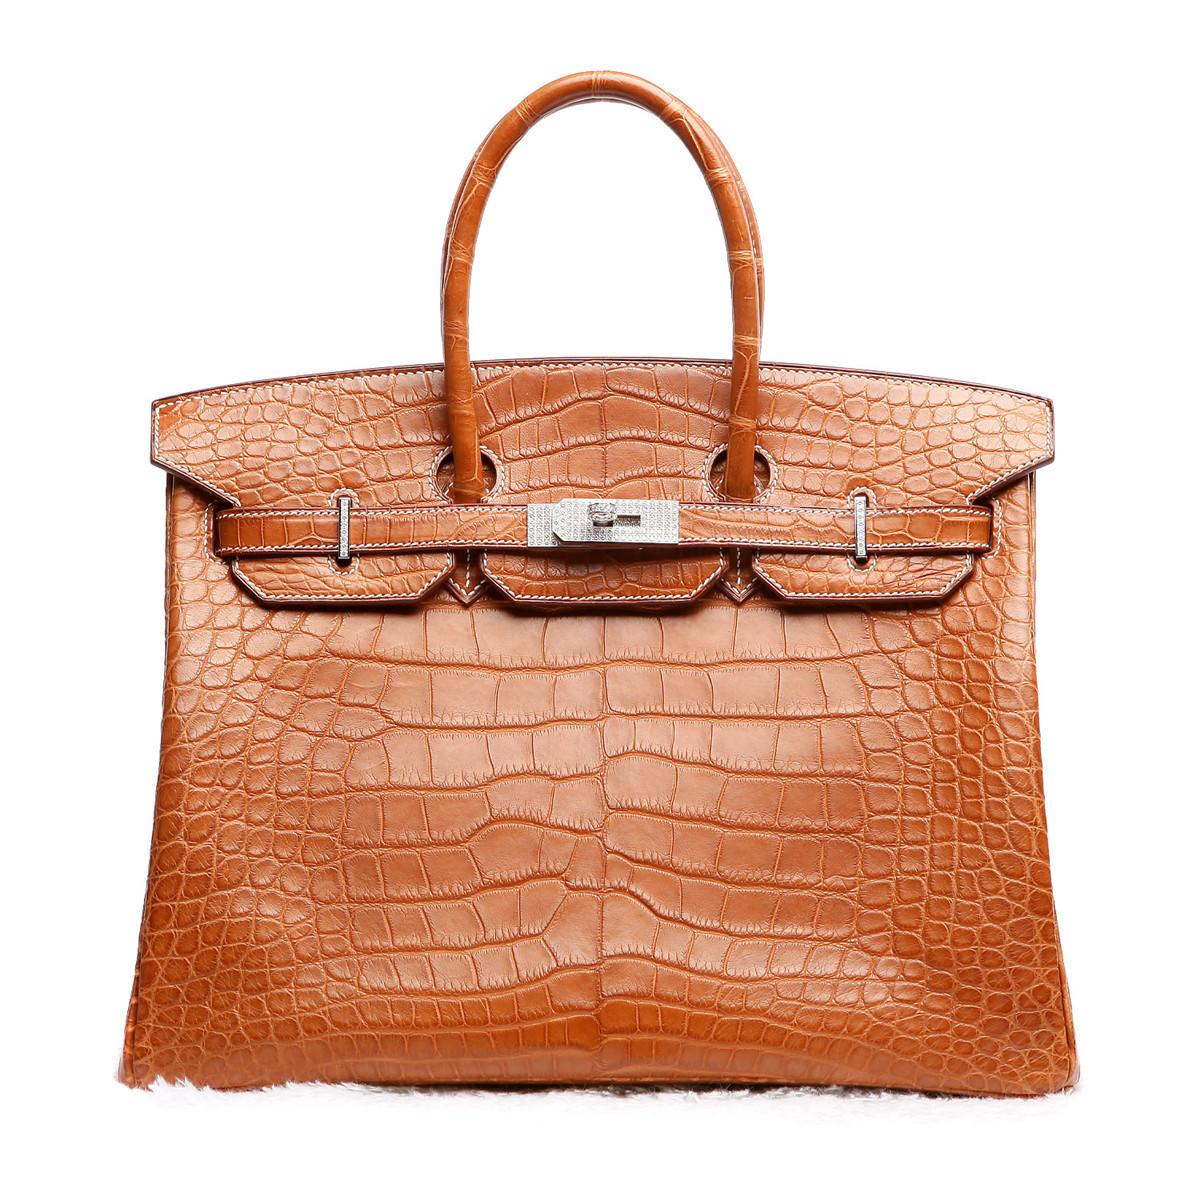 爱马仕中国官网新款Karson包包 经典时髦潮流款包包 HERMES女士潮流包包 - 七七奢侈品